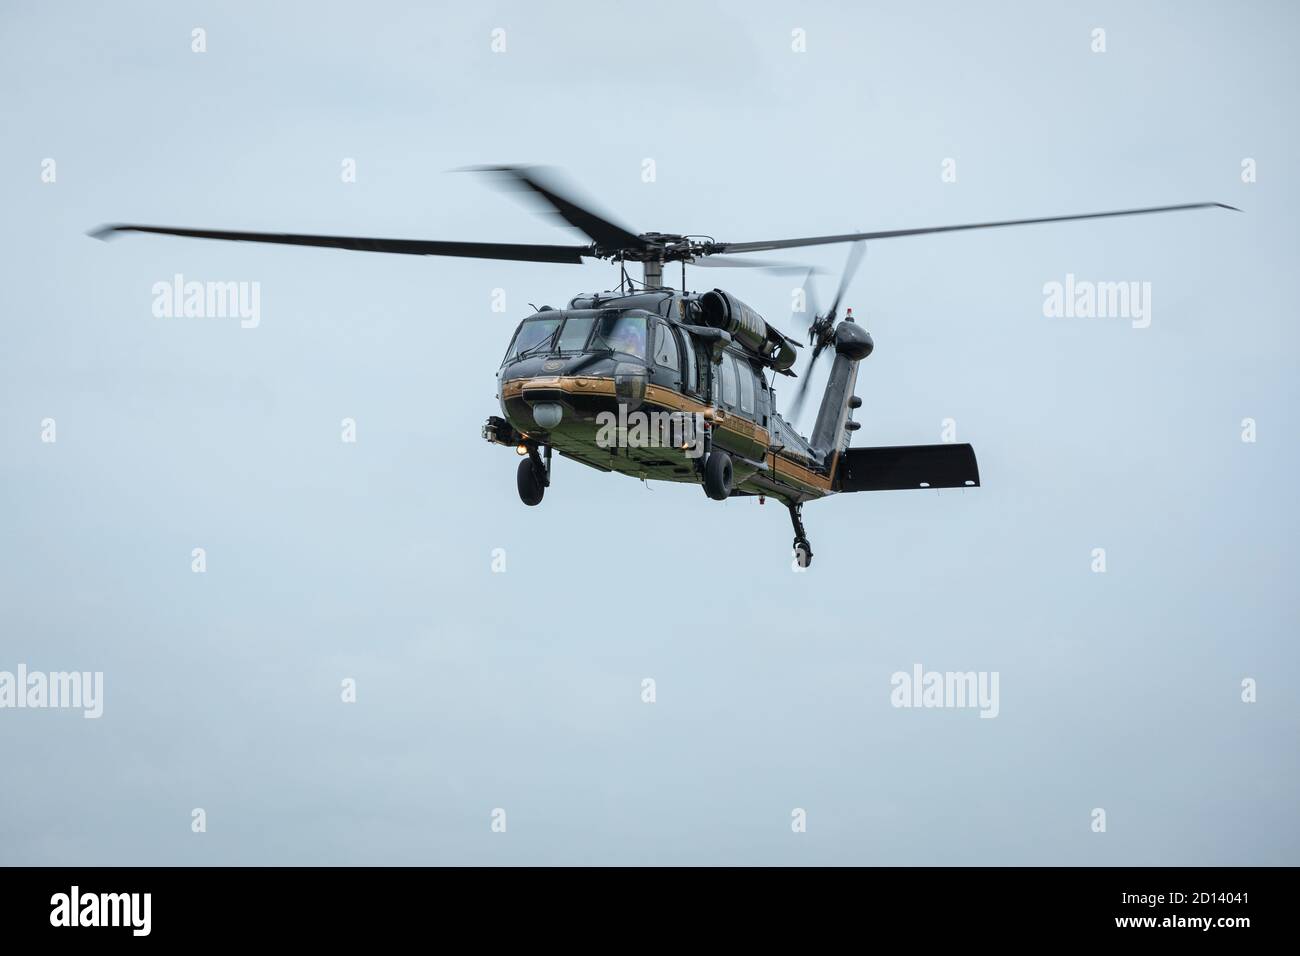 Las tripulaciones de las operaciones aéreas y marinas de CBP llegan a Luisiana el 26 de agosto de 2020, antes de que el huracán Laura llegue a tierra. Las tripulaciones están en fase de preparación para posibles operaciones de búsqueda y rescate. Foto de stock